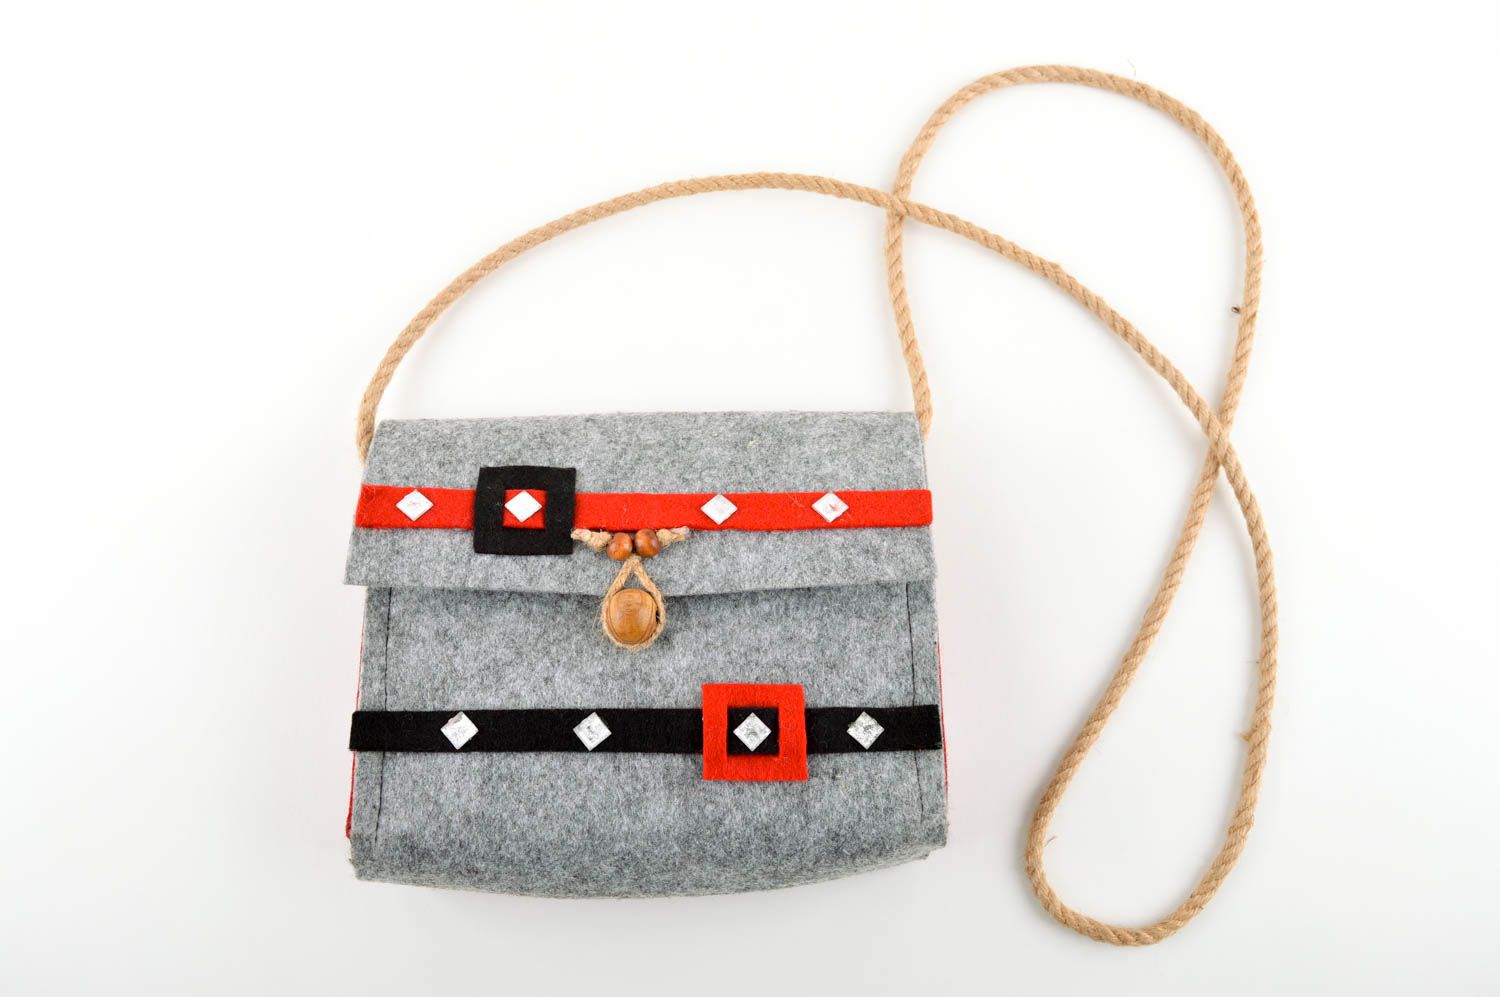 Handmade designer bag shoulder bag fashion accessories for girls gifts for her photo 1